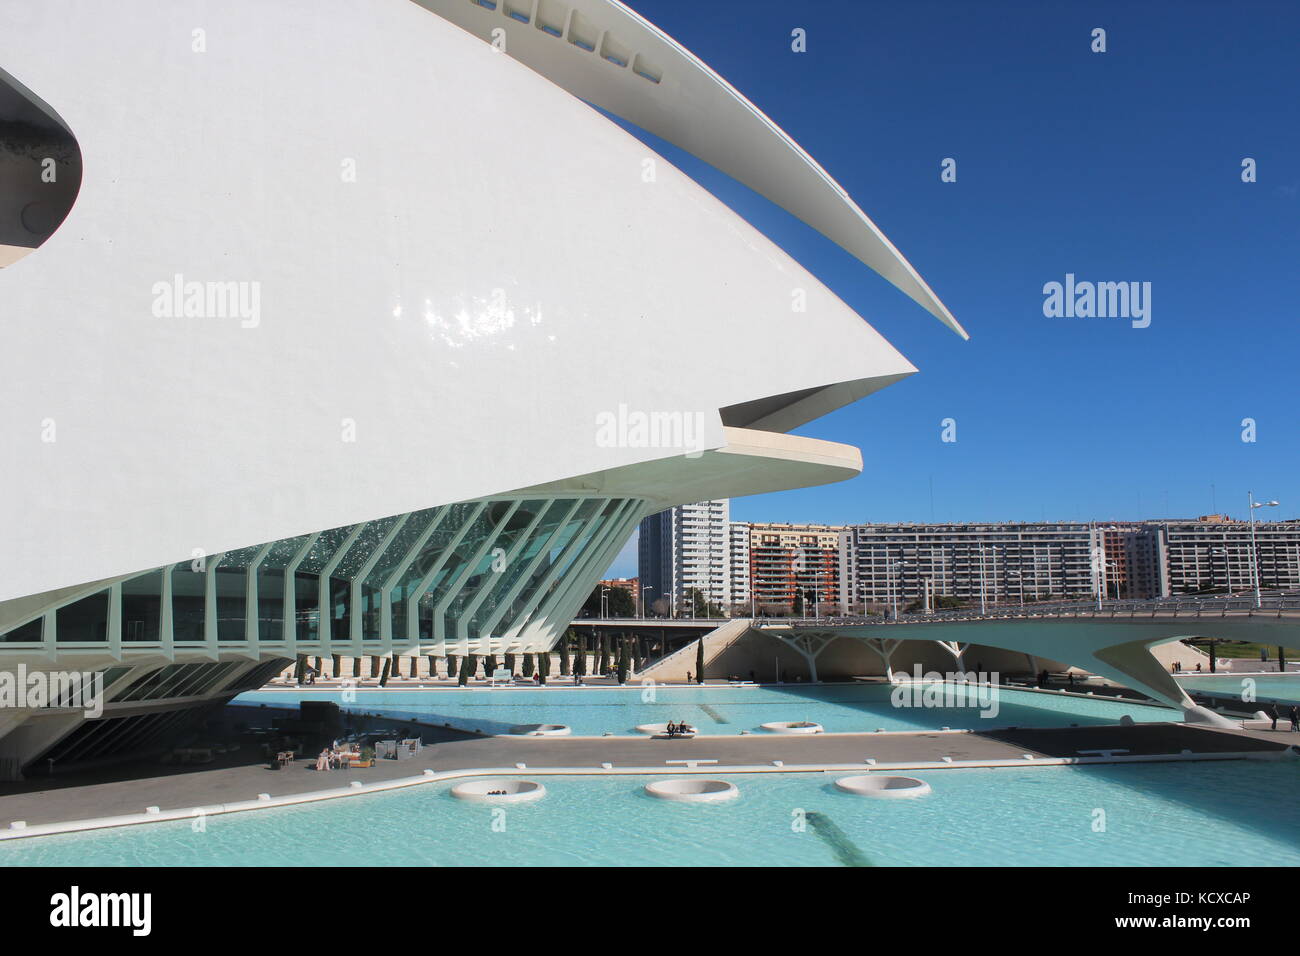 Ciudad de las Artes y las Ciencias. The Science Park in Valencia, Designed by Calatrava. Stock Photo